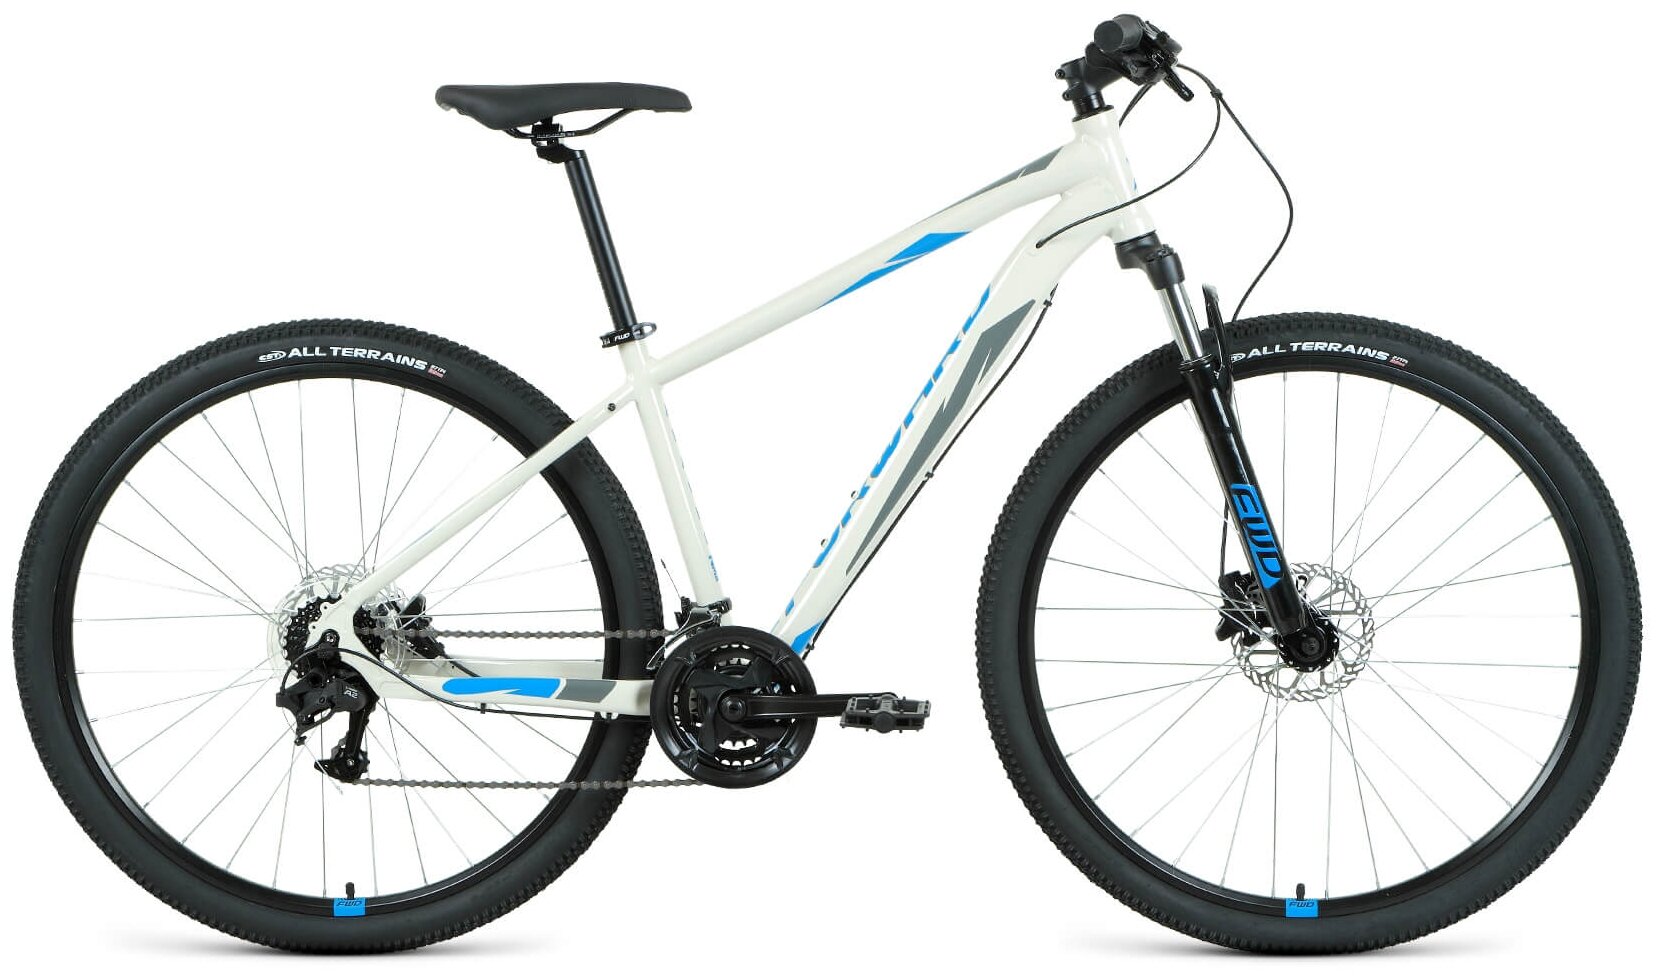 Велосипед Forward Apache 29 3.2 HD 2022 рост 19 серый/синий